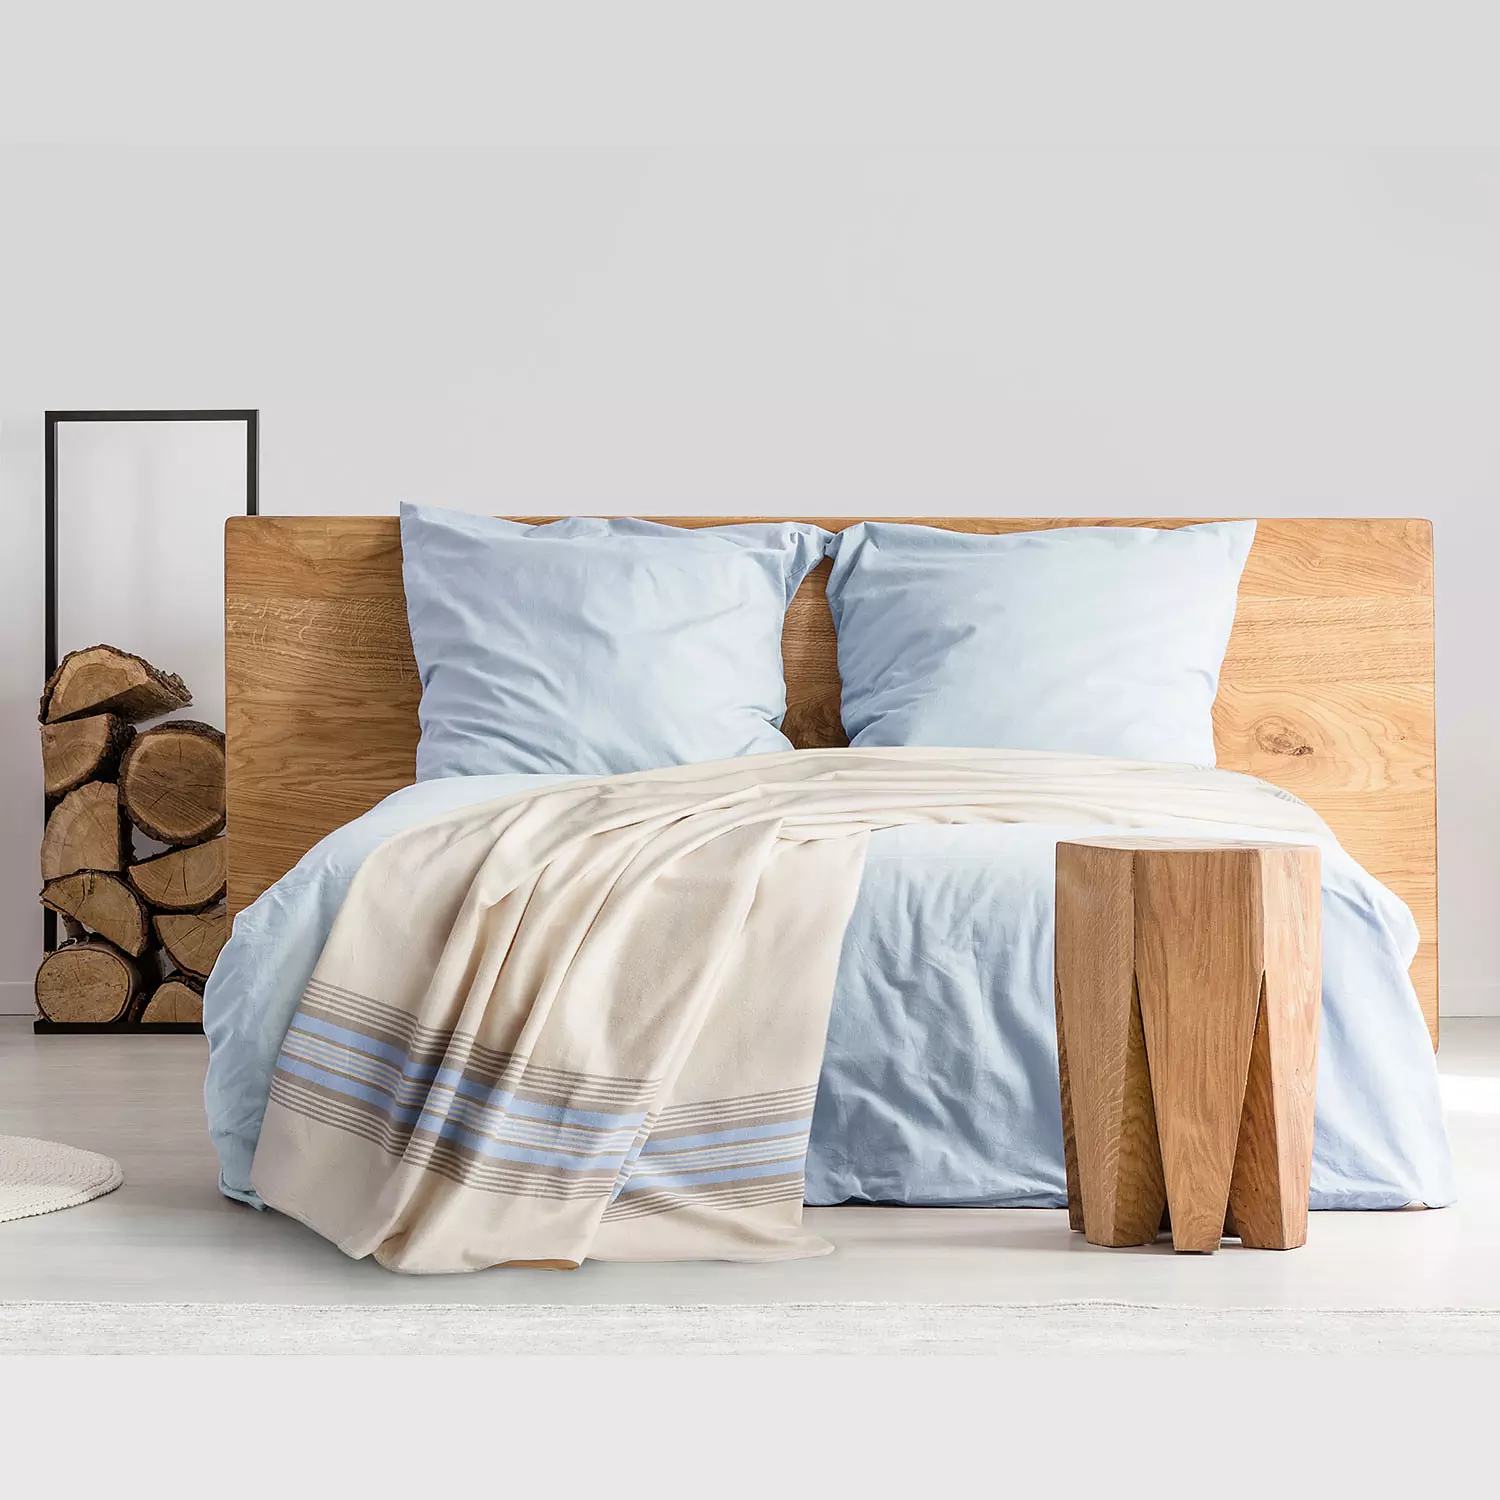 Martex - Couverture avec rayures en flanelle, gris et bleu, lit simple